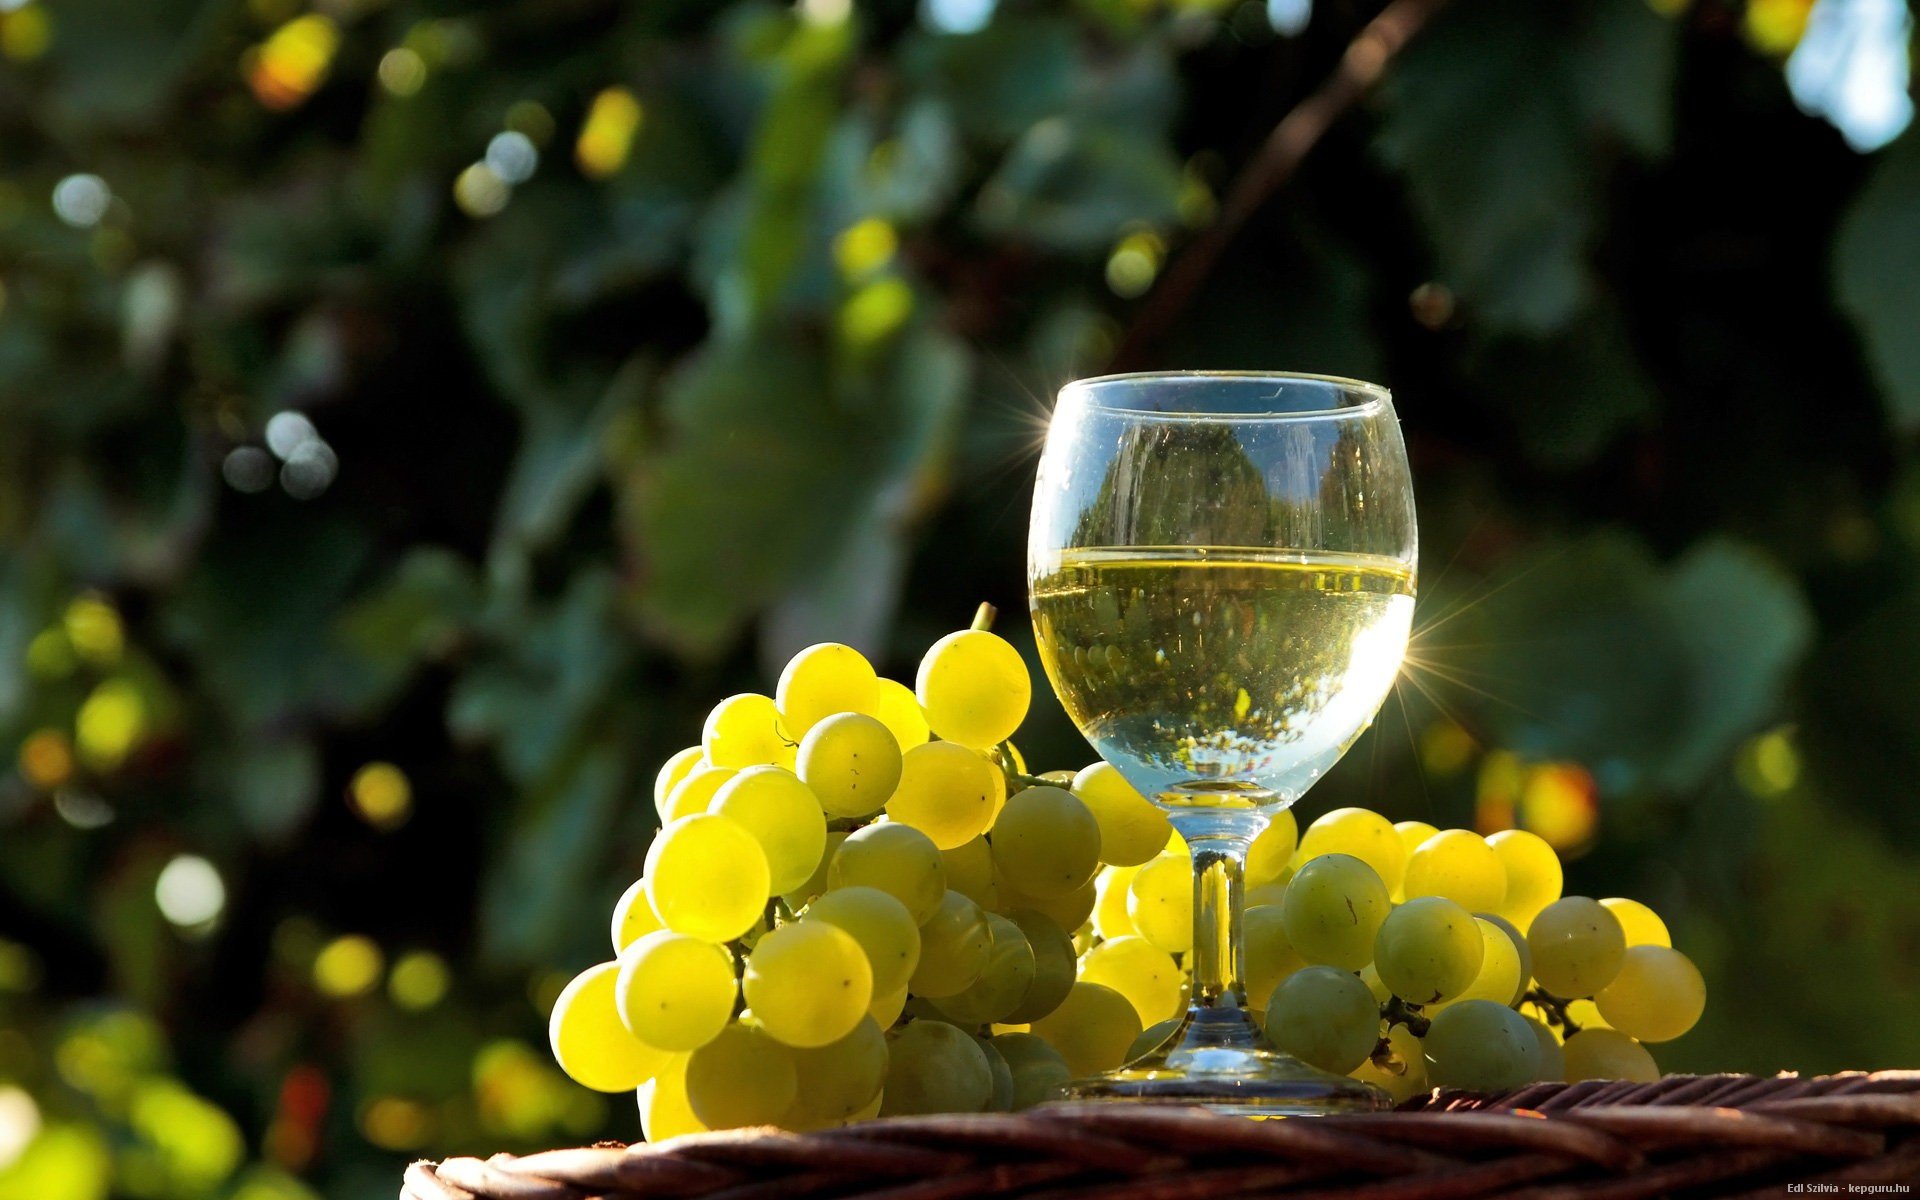 Вся правда о вине - польза и вред. Рекомендации врачей об употреблении вина каждый день